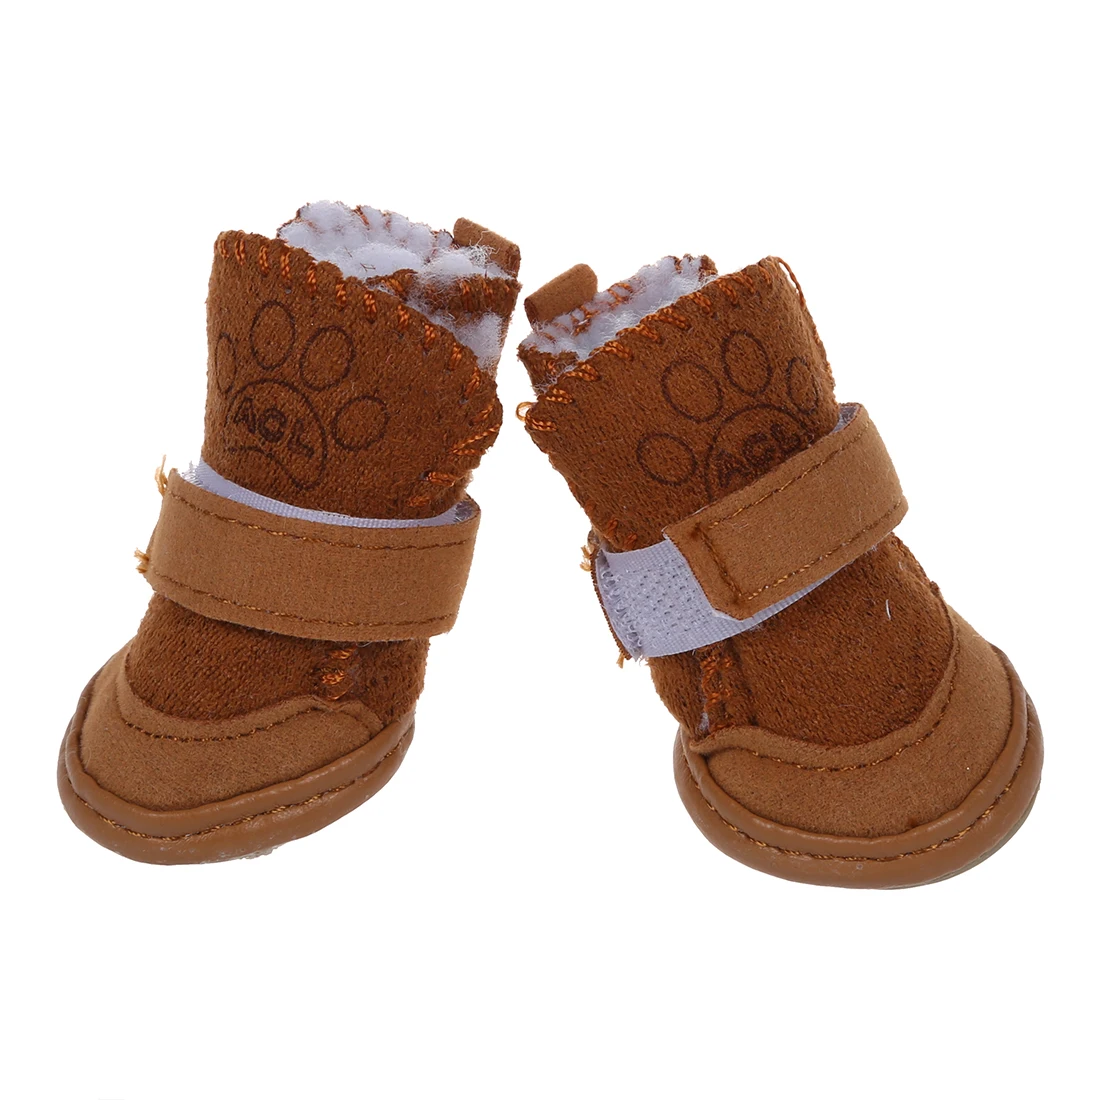 Животные Снег обувь, теплые сапоги защитный; набор из 4 цвета хаки Размеры-1 шт